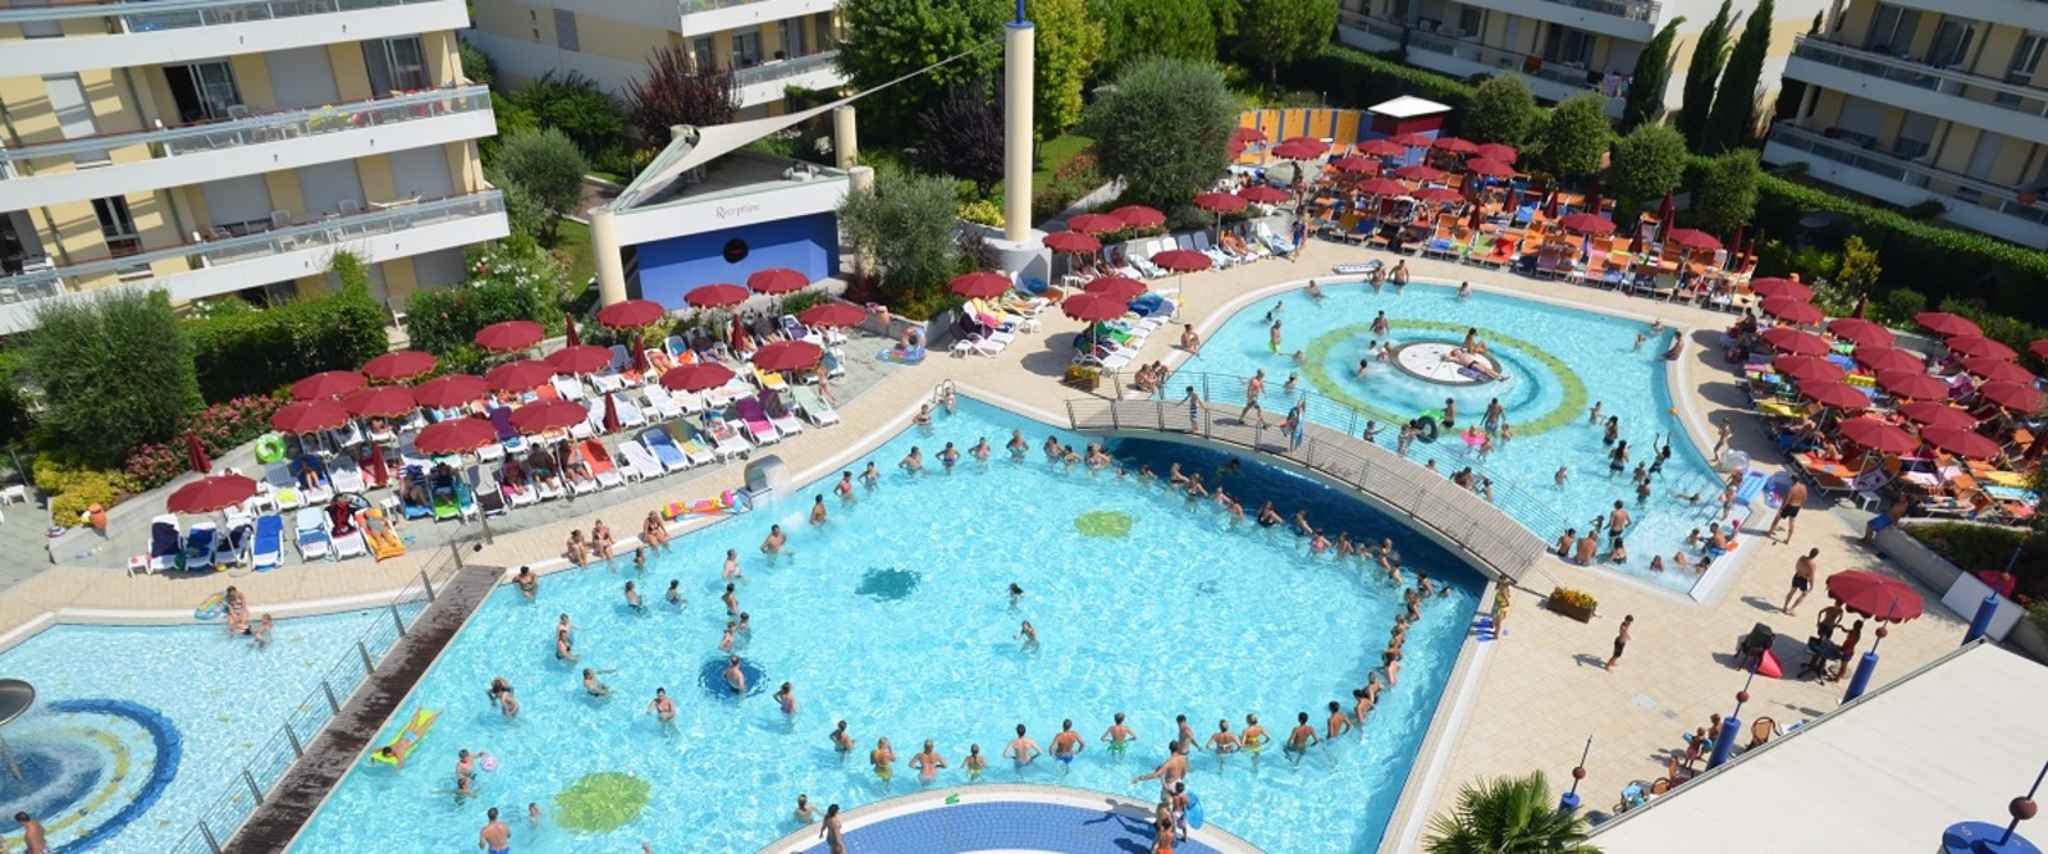 Ferienwohnung mit Wasserrutschen und Pools  in Italien